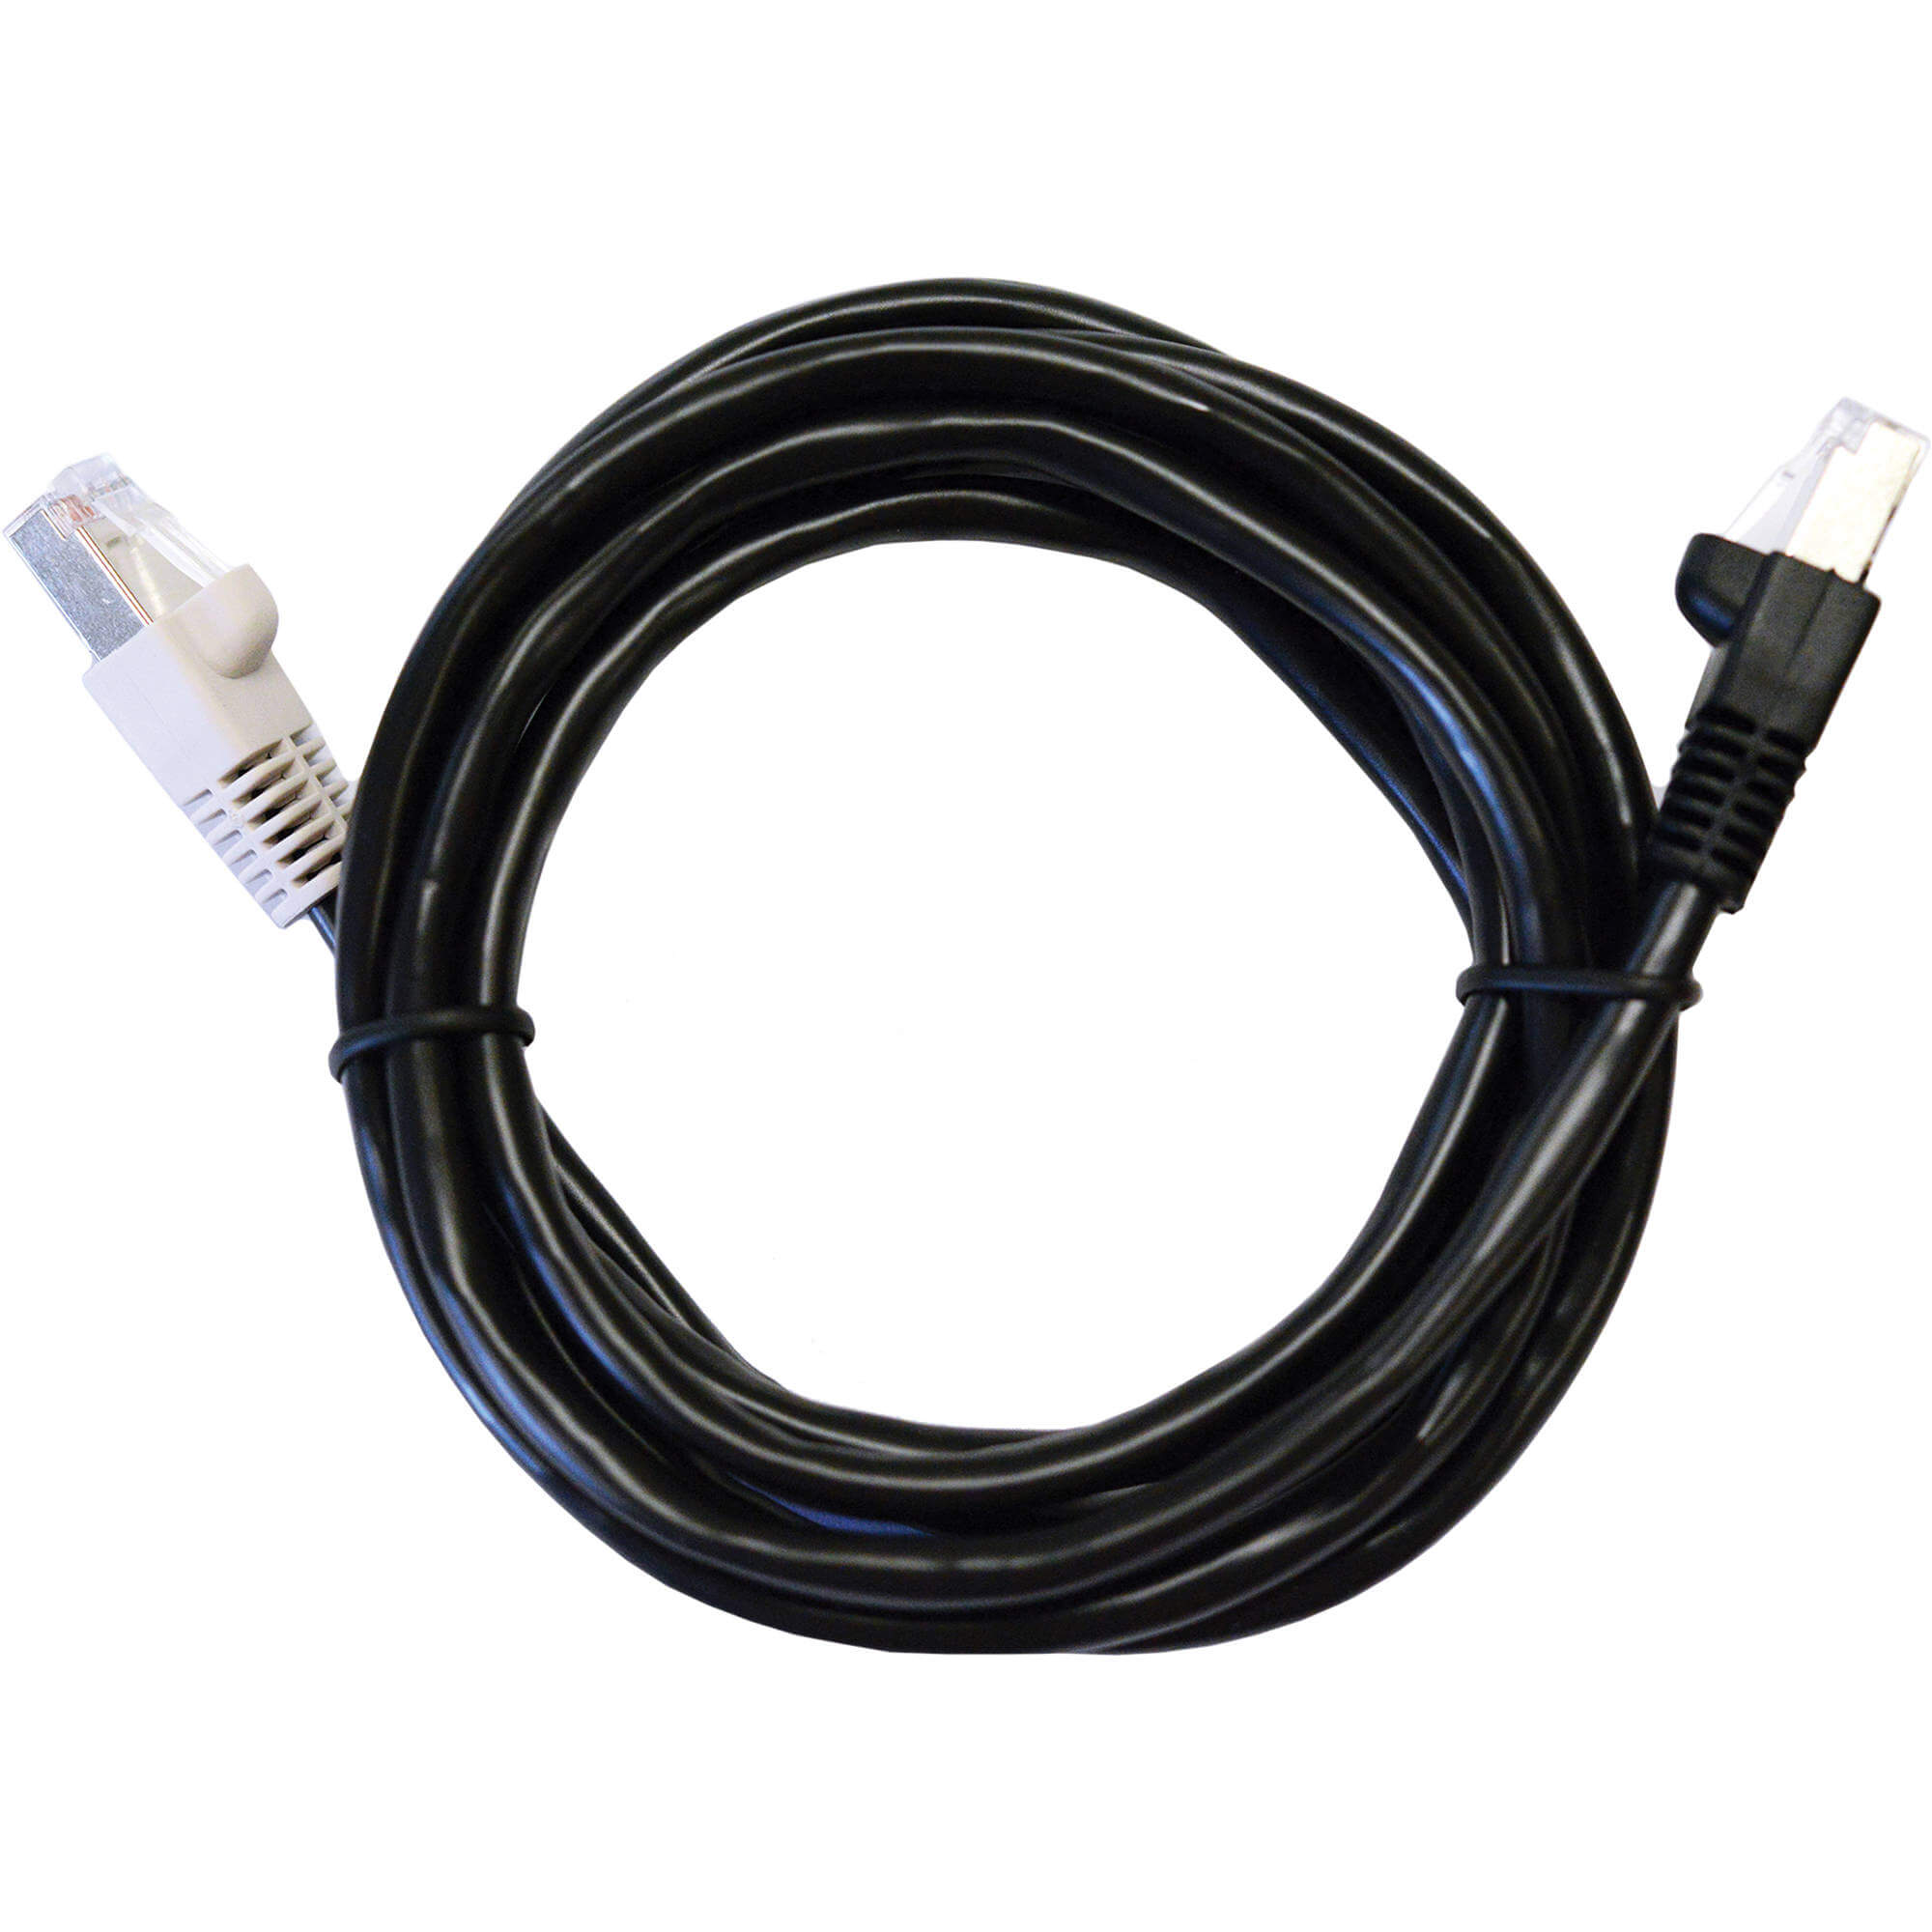 Cable de Conferencia (Conductor, 5mt)